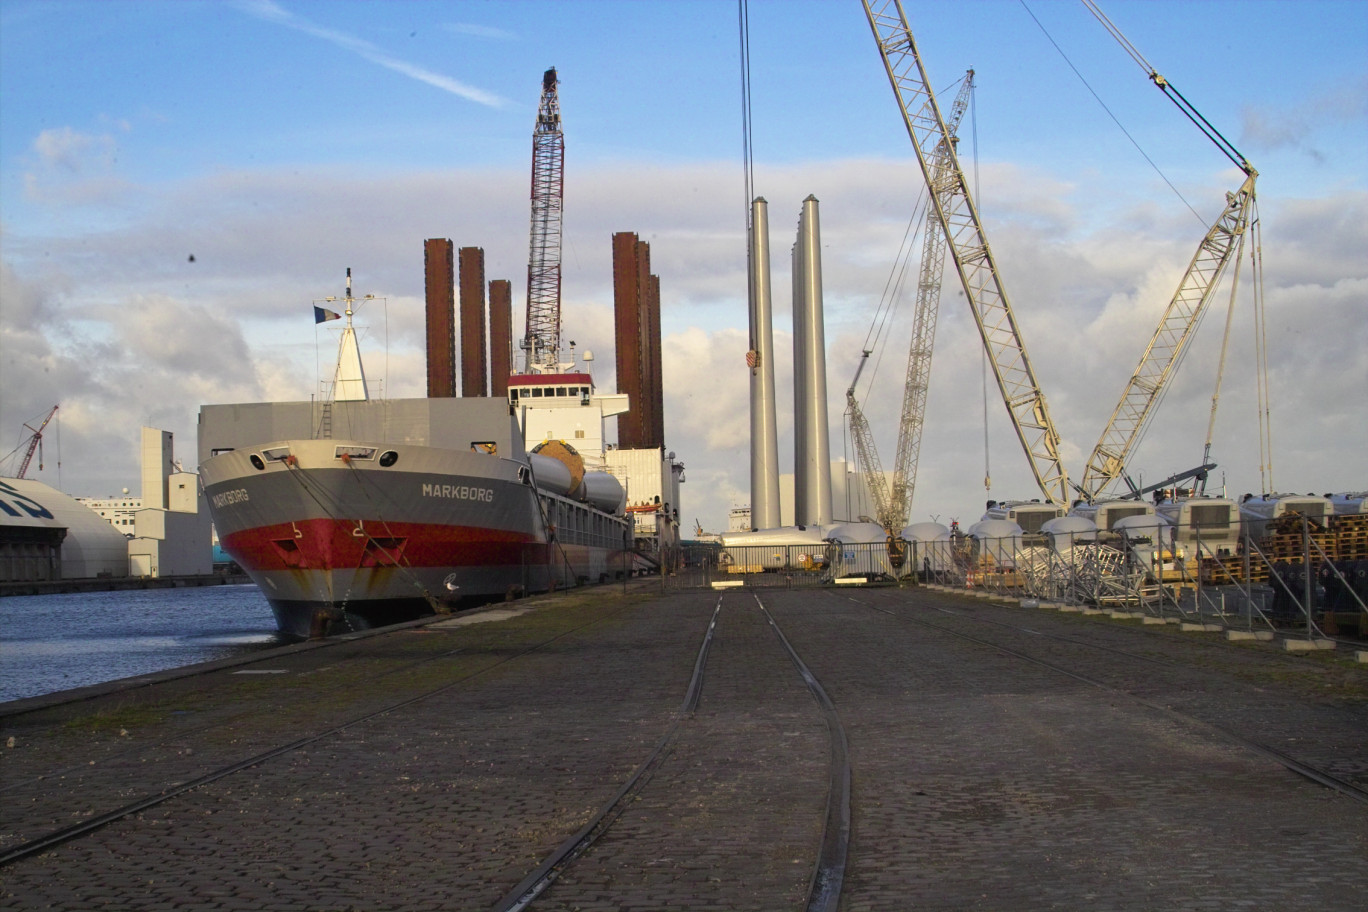 Une analyse démontre que plus de 3,7 milliards d’euros de valeur ajoutée y ont été générés en 2013 par le port de Dunkerque.